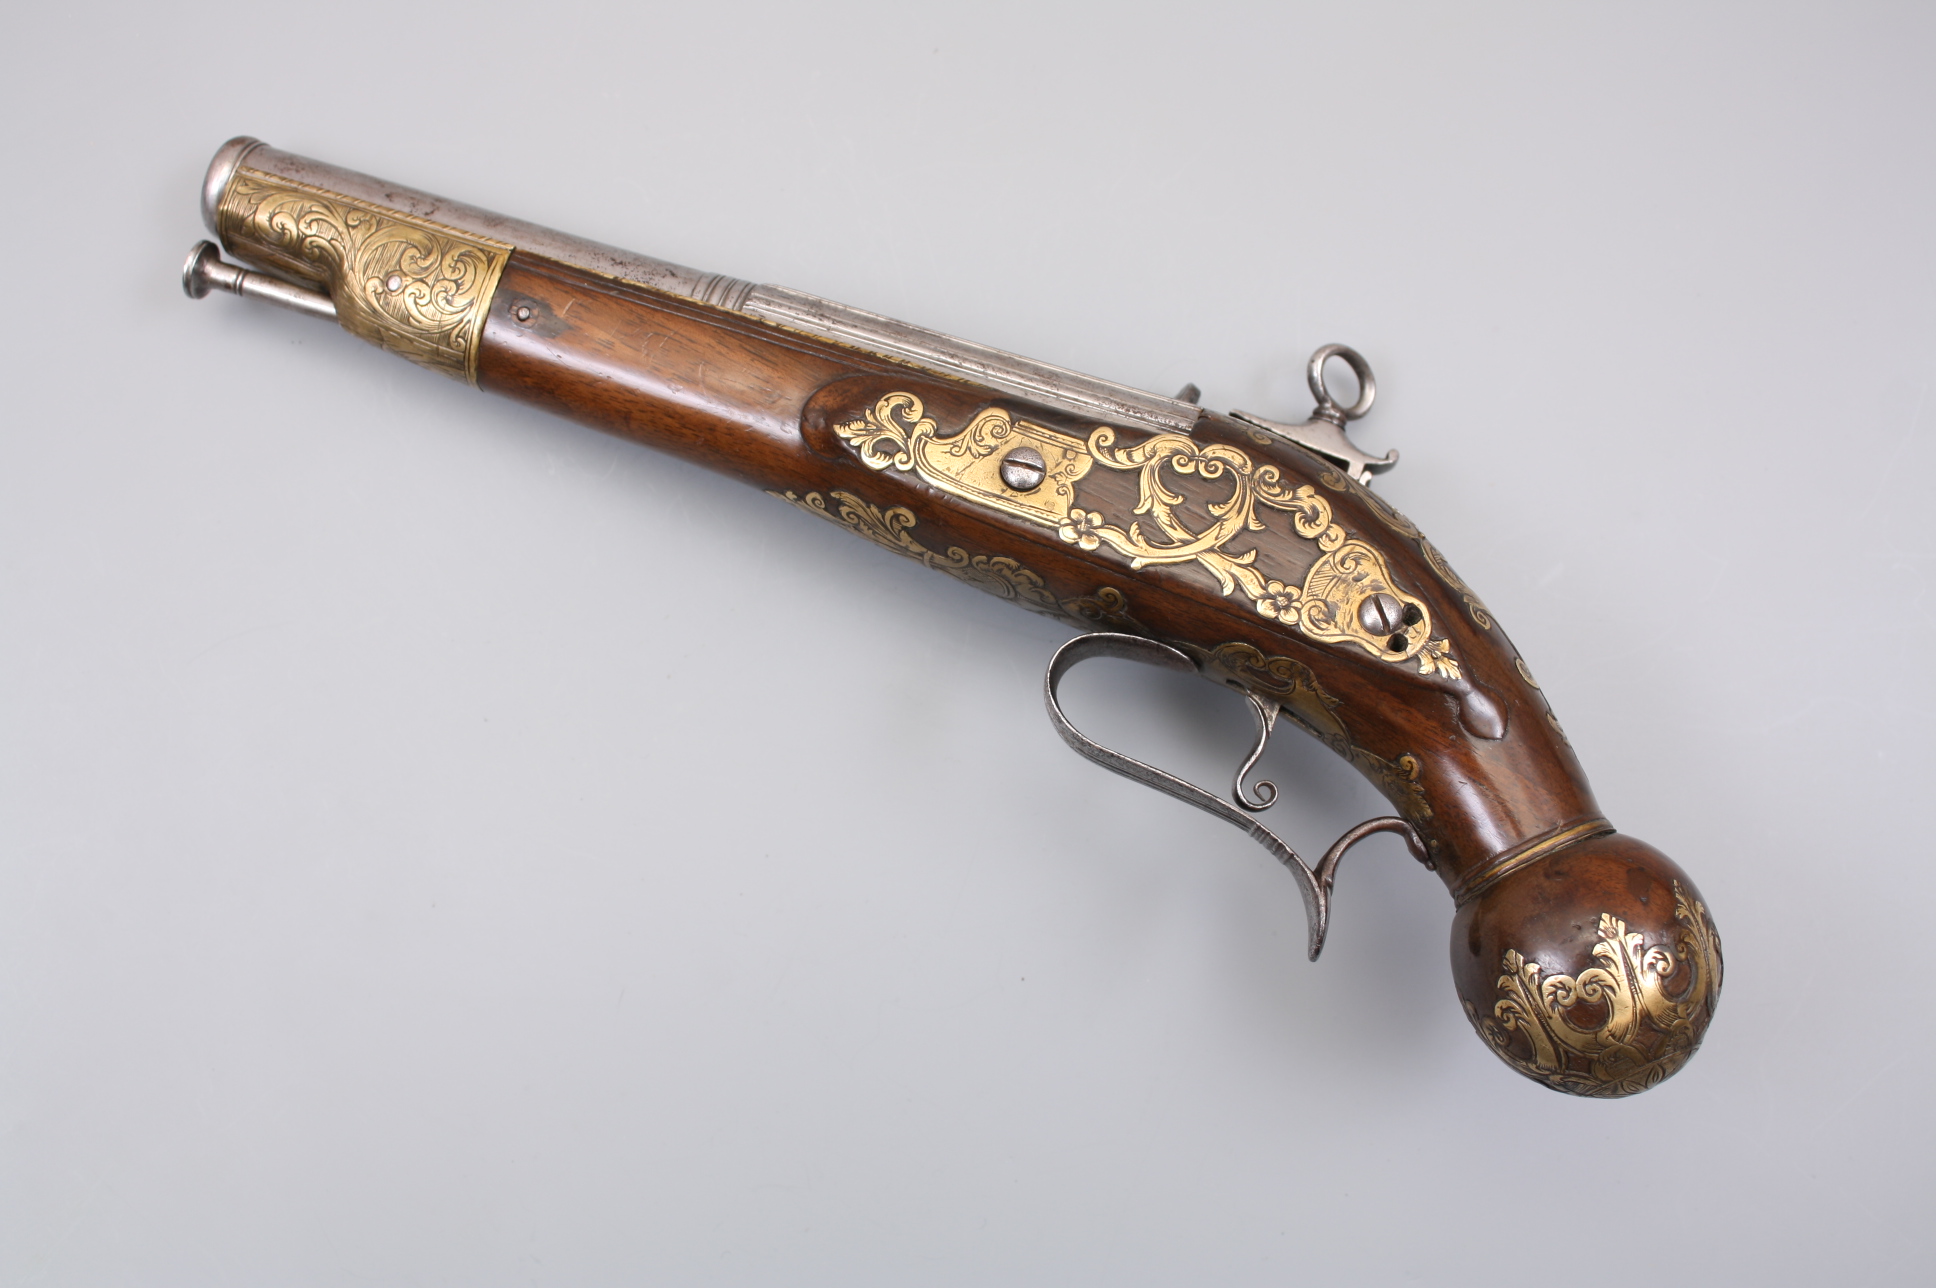 Красивый кремневый пистолет  1800 год, Италия, Неаполь.